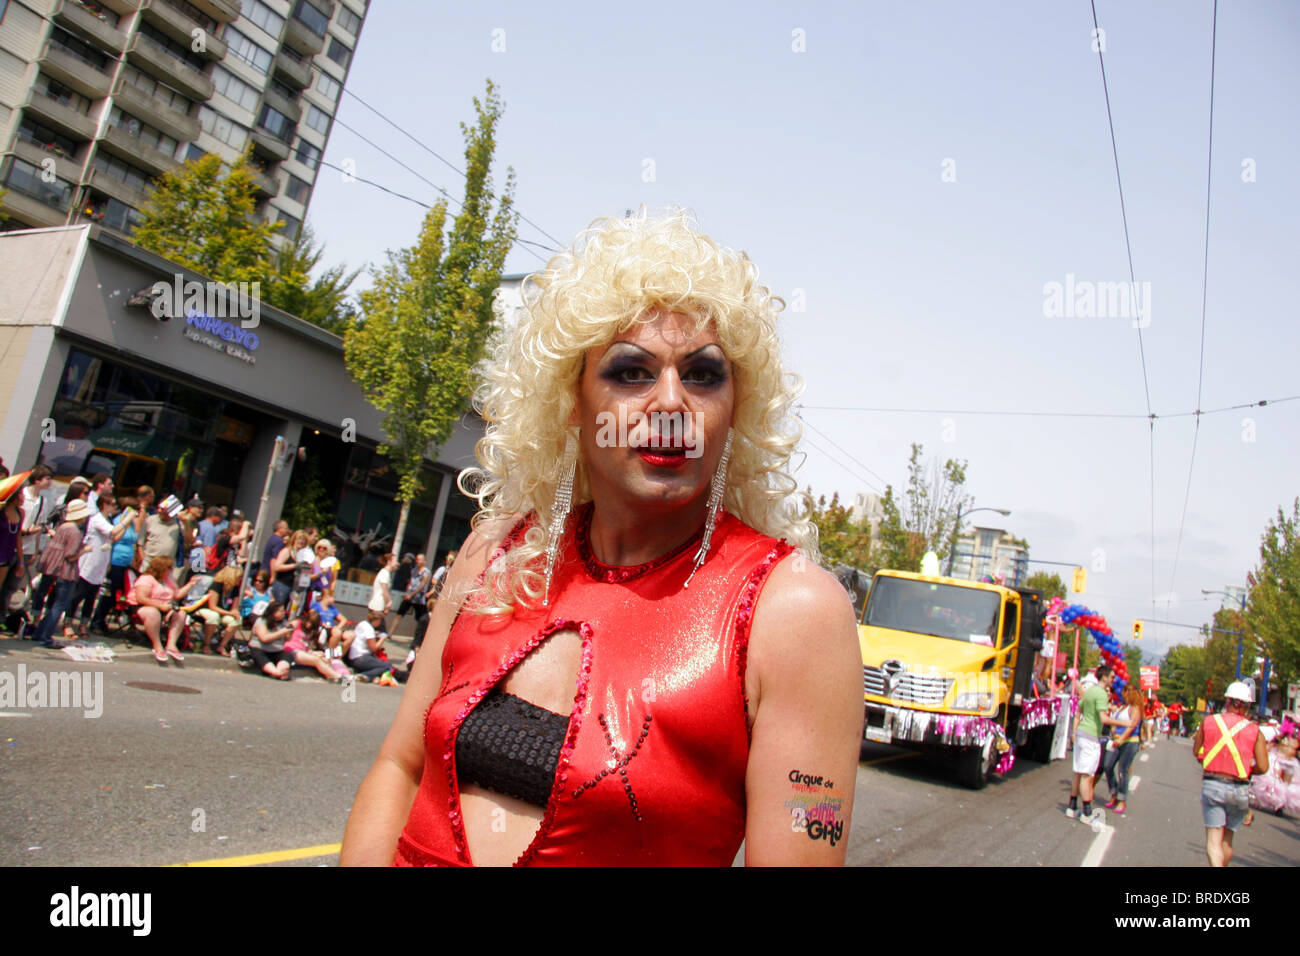 Man in drag, Gay Pride march, Vancouver, Canada Stock Photo